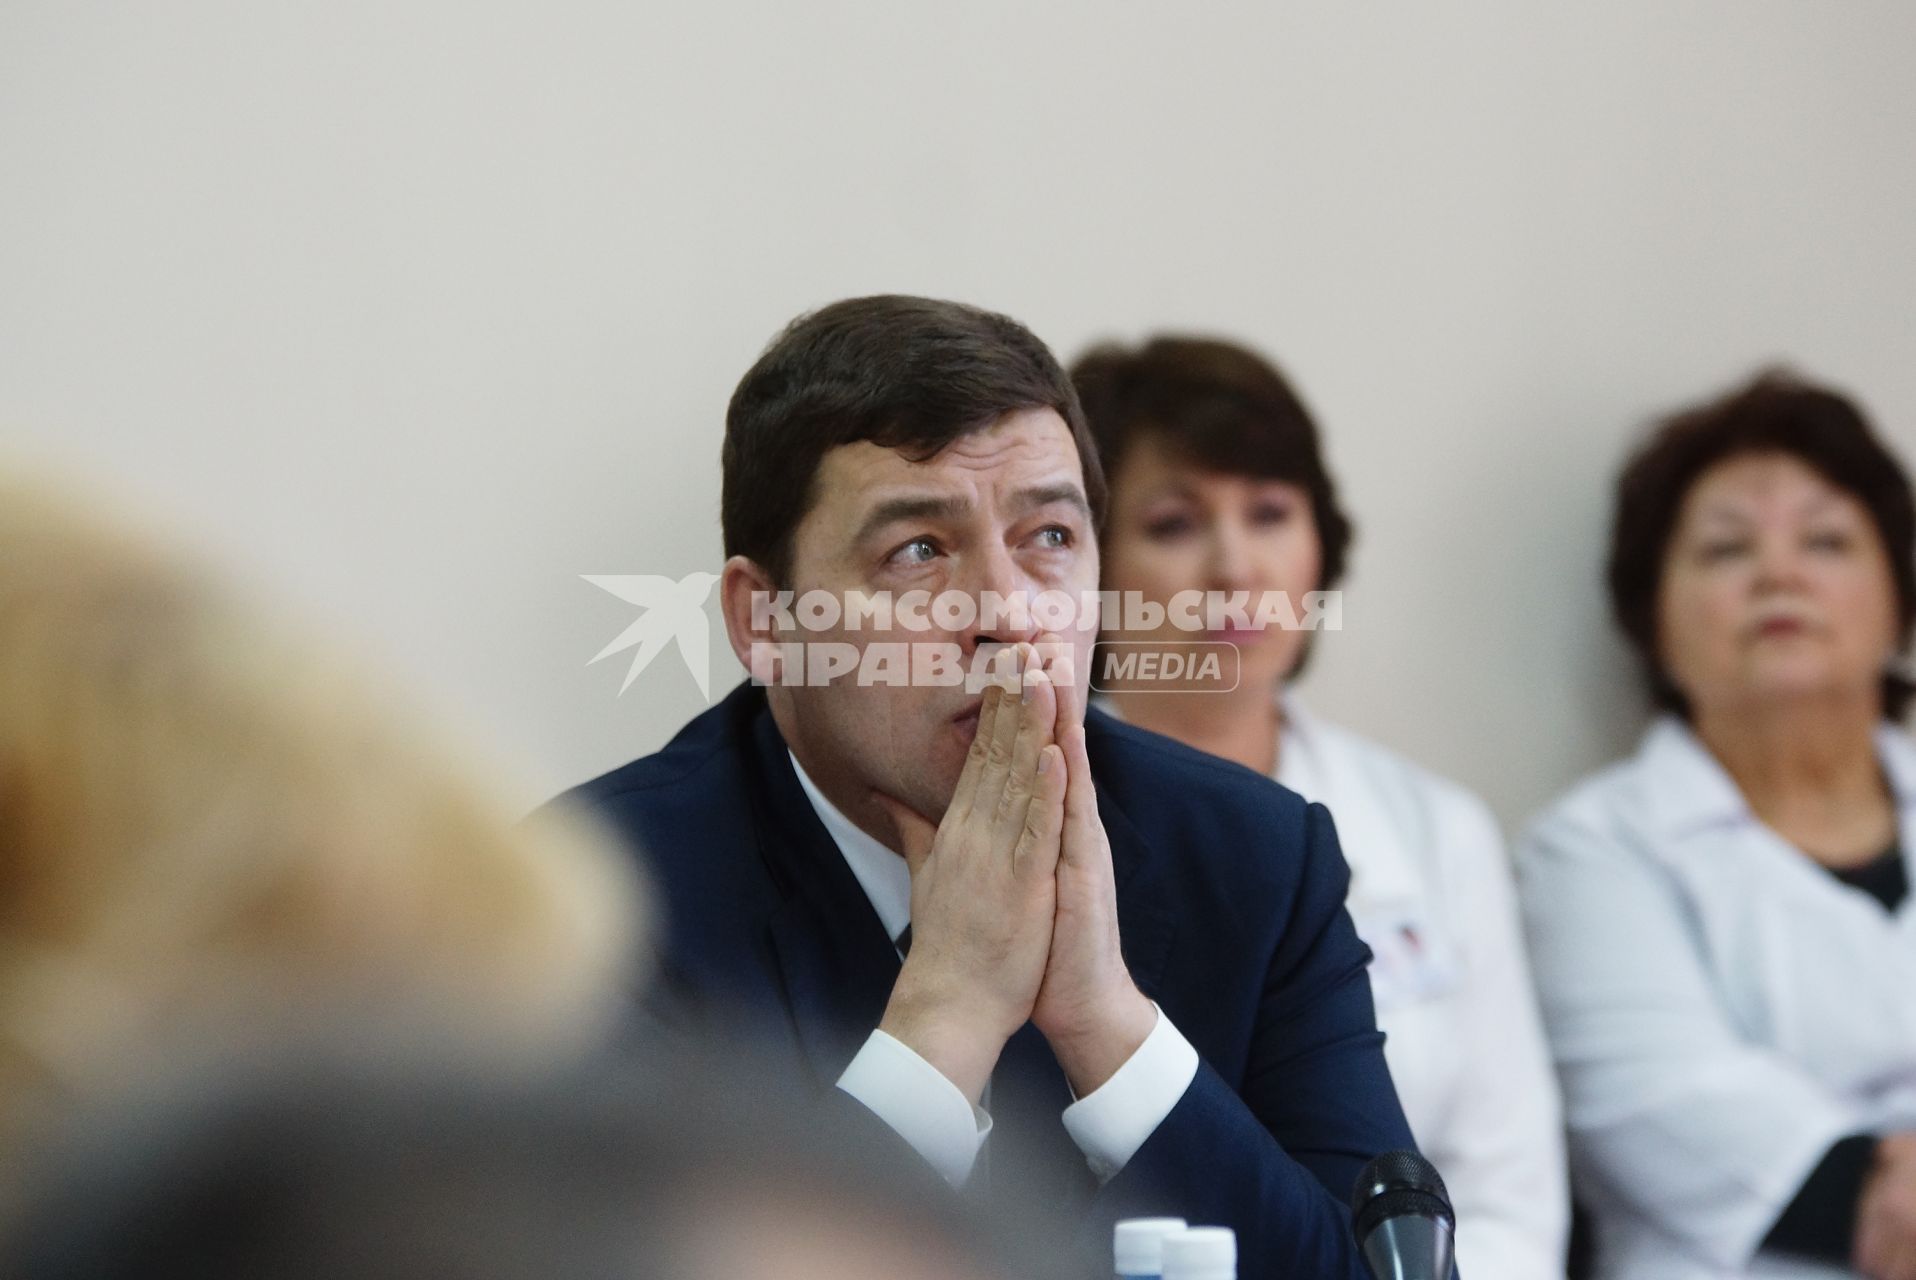 губернатор Свердловской области Евгений Куйвашев в областной клинической болнице №1 в Екатеринбурге